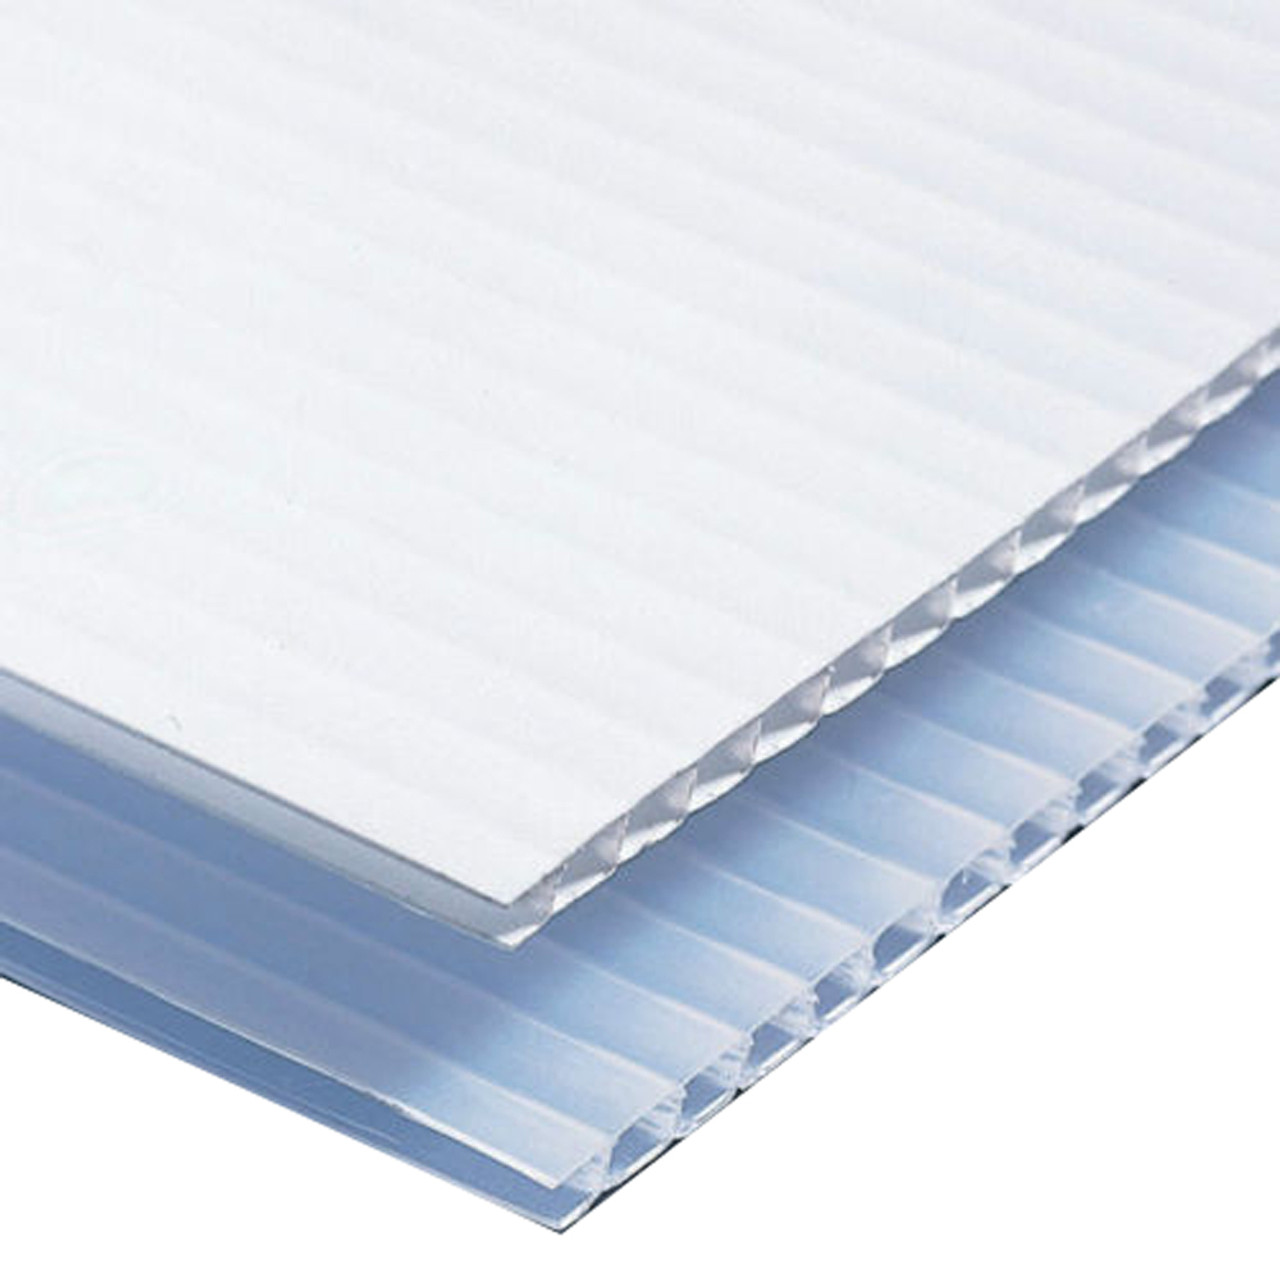 18 x 12 Corrugated Plastic Sheets - Short Flute White